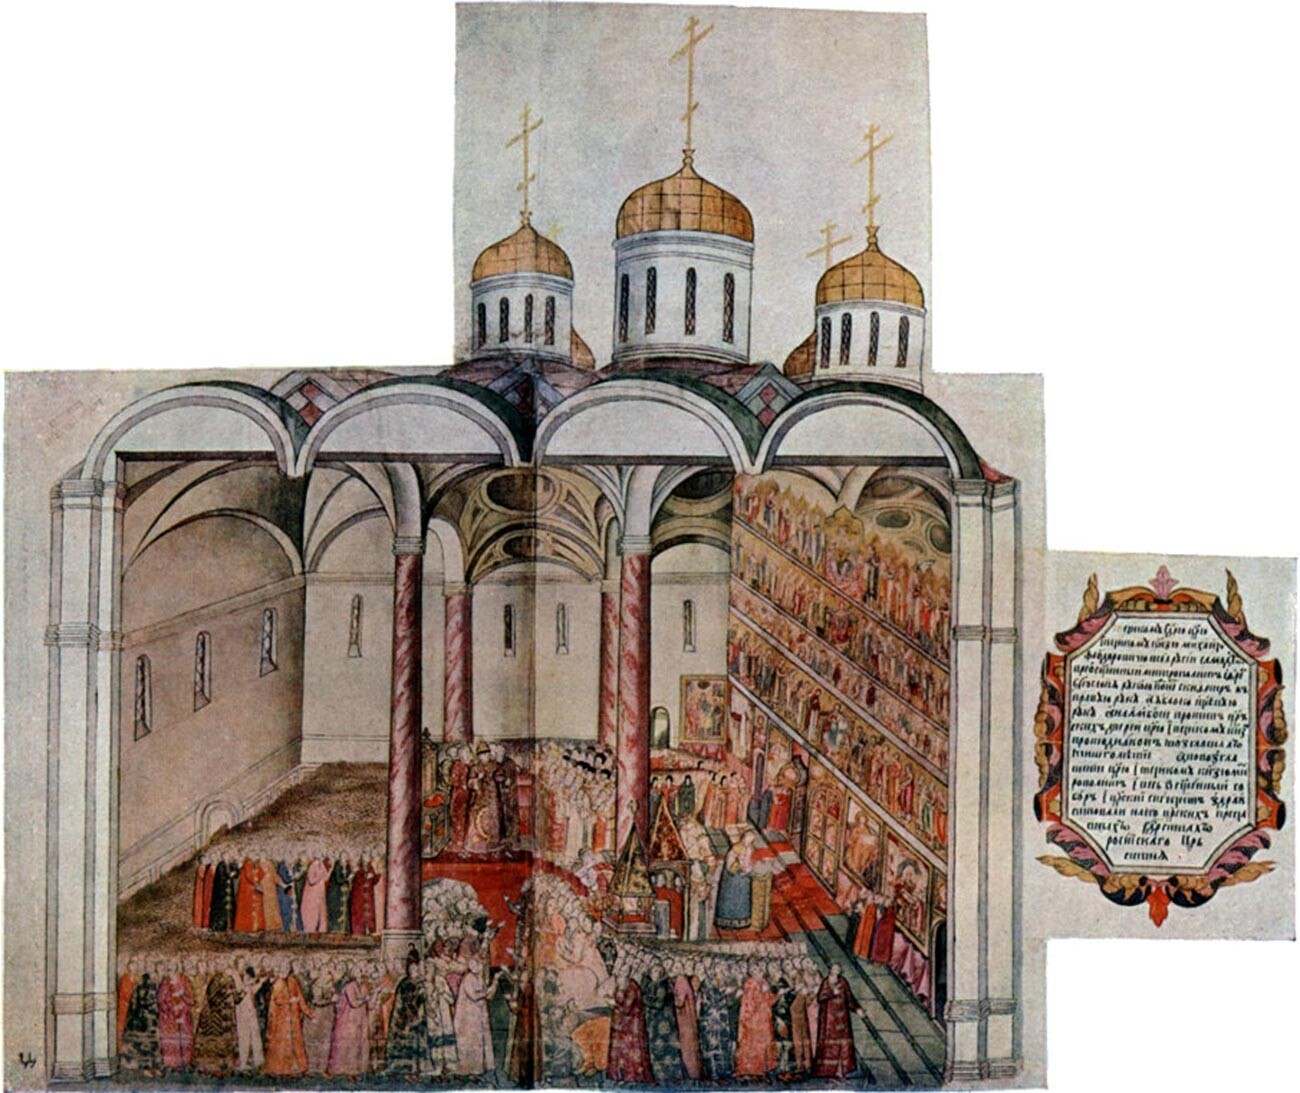 Katedral Asumsi. Penobatan Mikhail Romanov. Reproduksi ilustrasi 1673 diterbitkan di P. G. Vasenko, Romanov Boyars dan Penobatan Mikhail Fedorovich (Sankt Peterburg, 1913).